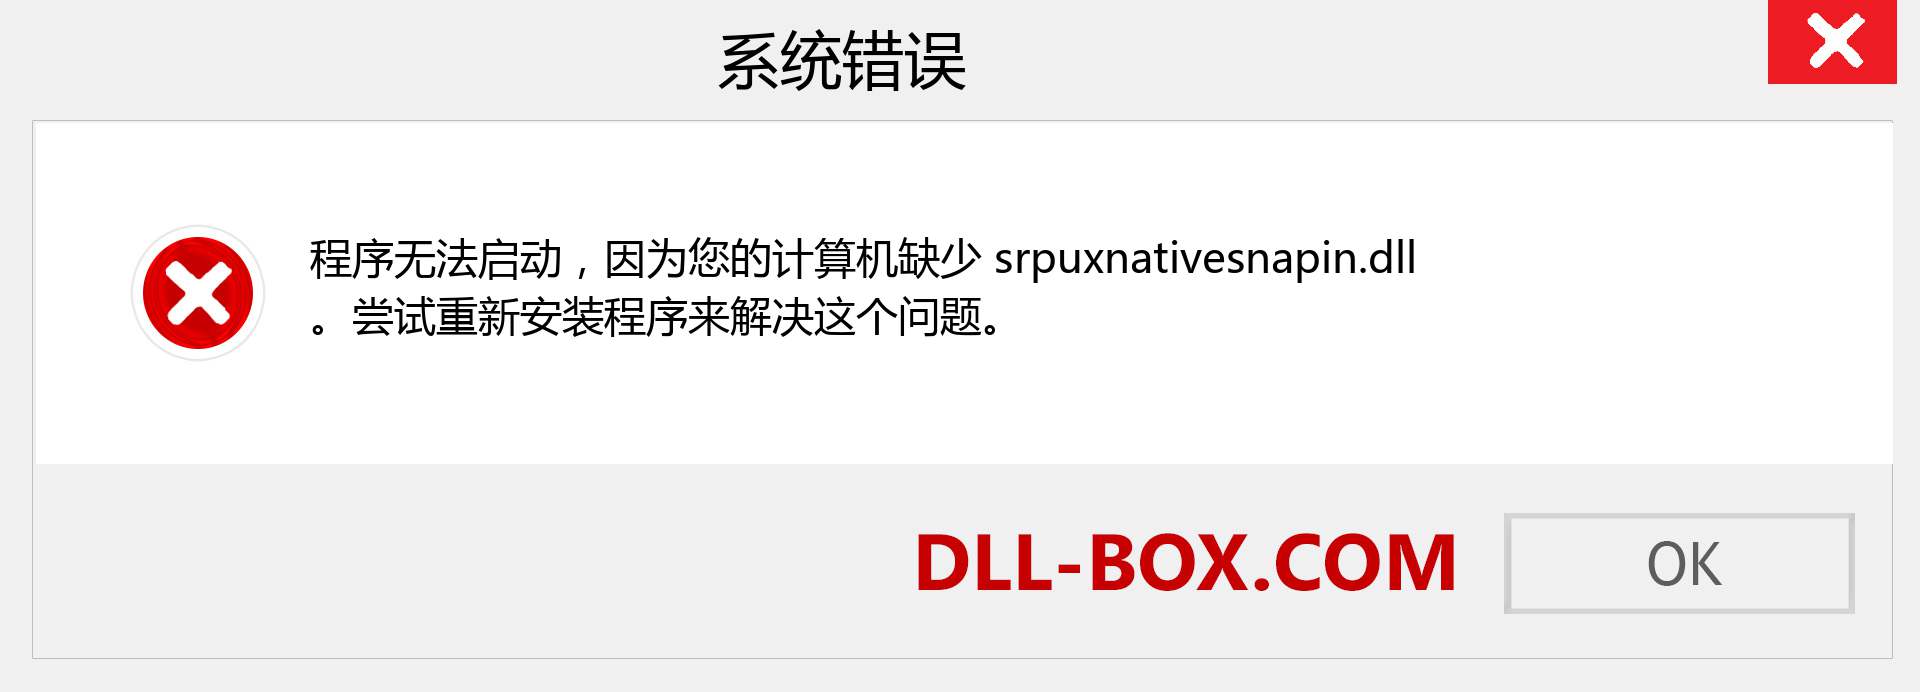 srpuxnativesnapin.dll 文件丢失？。 适用于 Windows 7、8、10 的下载 - 修复 Windows、照片、图像上的 srpuxnativesnapin dll 丢失错误